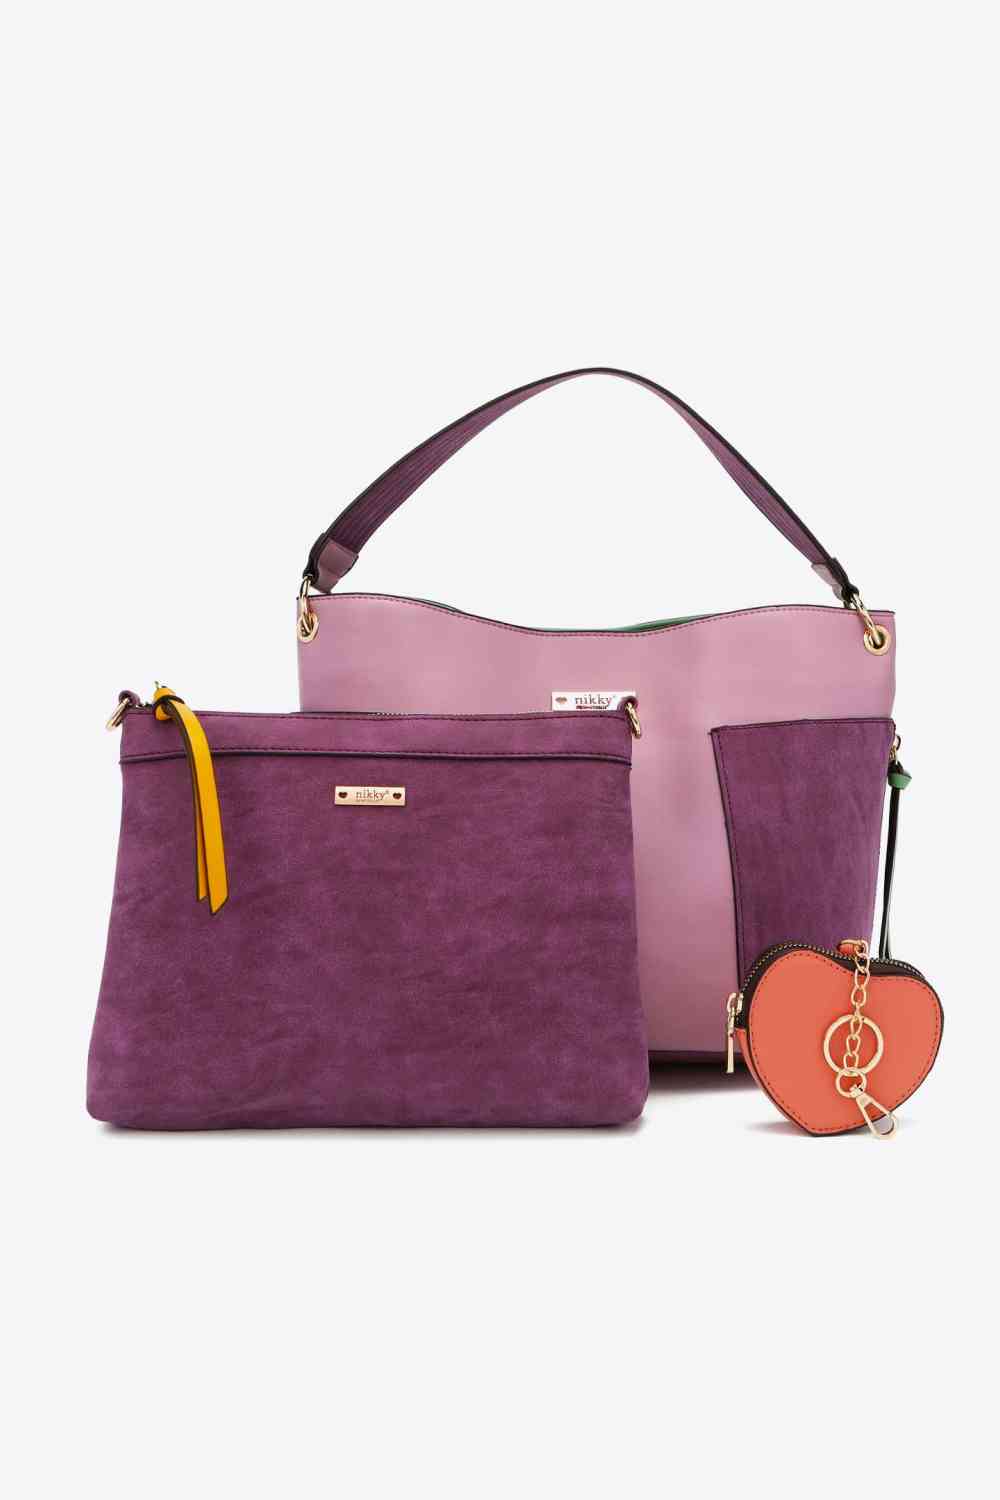 womenbags, women bag sale, women bag leather, michael kors women bag, lacoste women bag, women bag brand, dior women bag